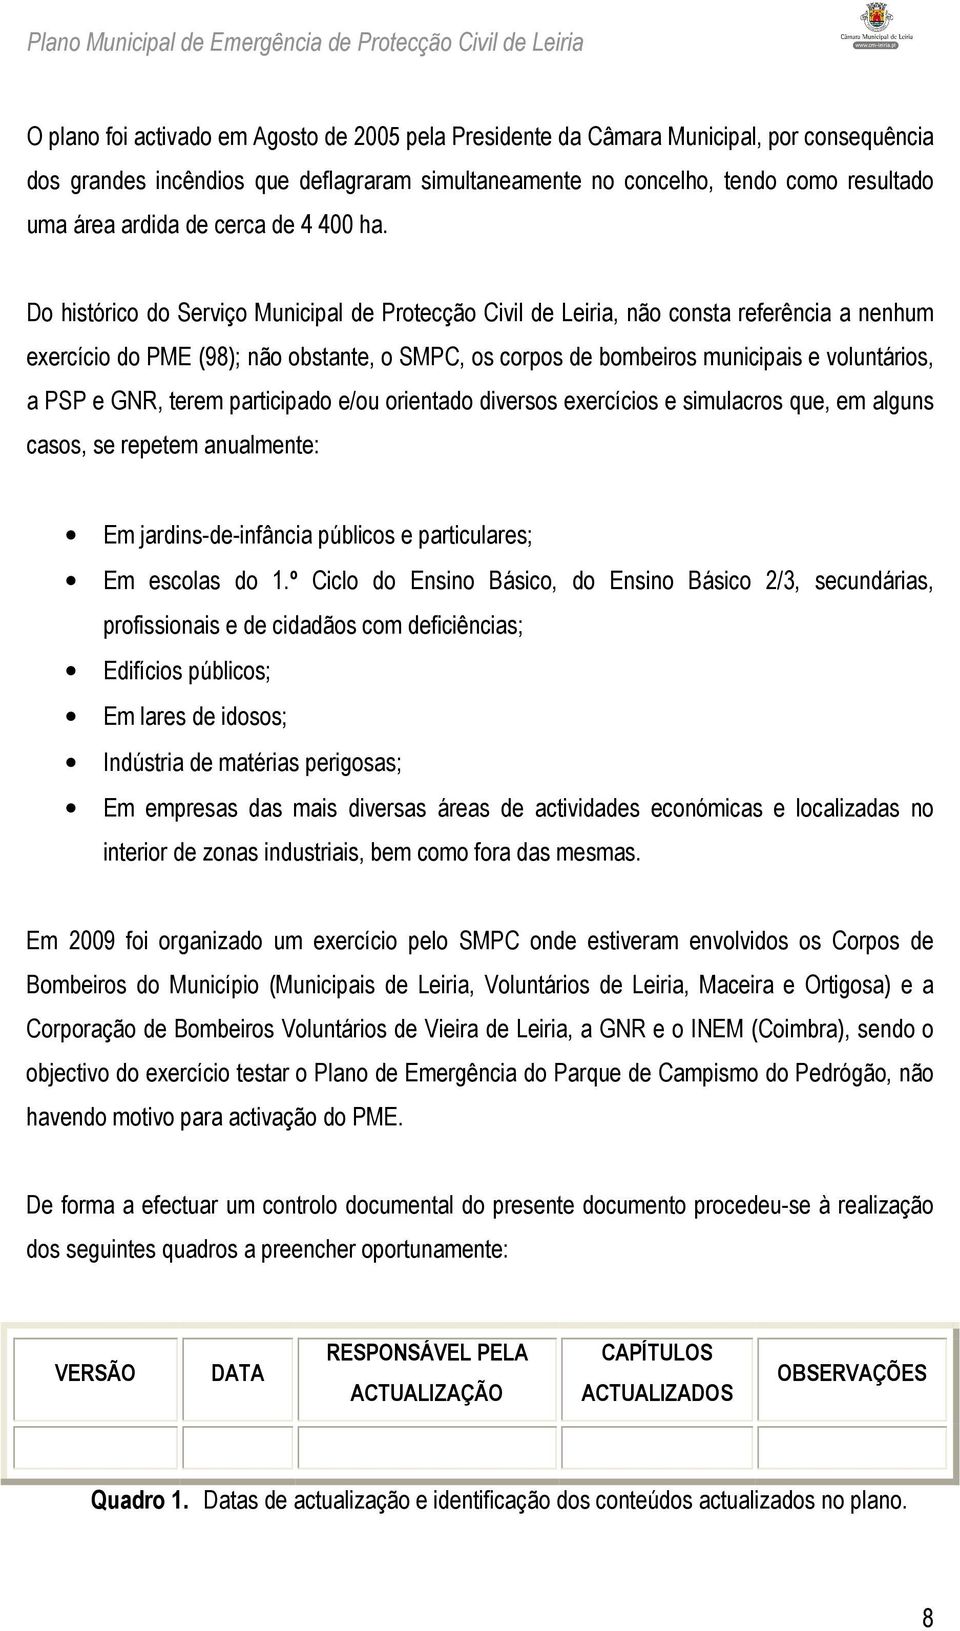 Do histórico do Serviço Municipal de Protecção Civil de Leiria, não consta referência a nenhum exercício do PME (98); não obstante, o SMPC, os corpos de bombeiros municipais e voluntários, a PSP e